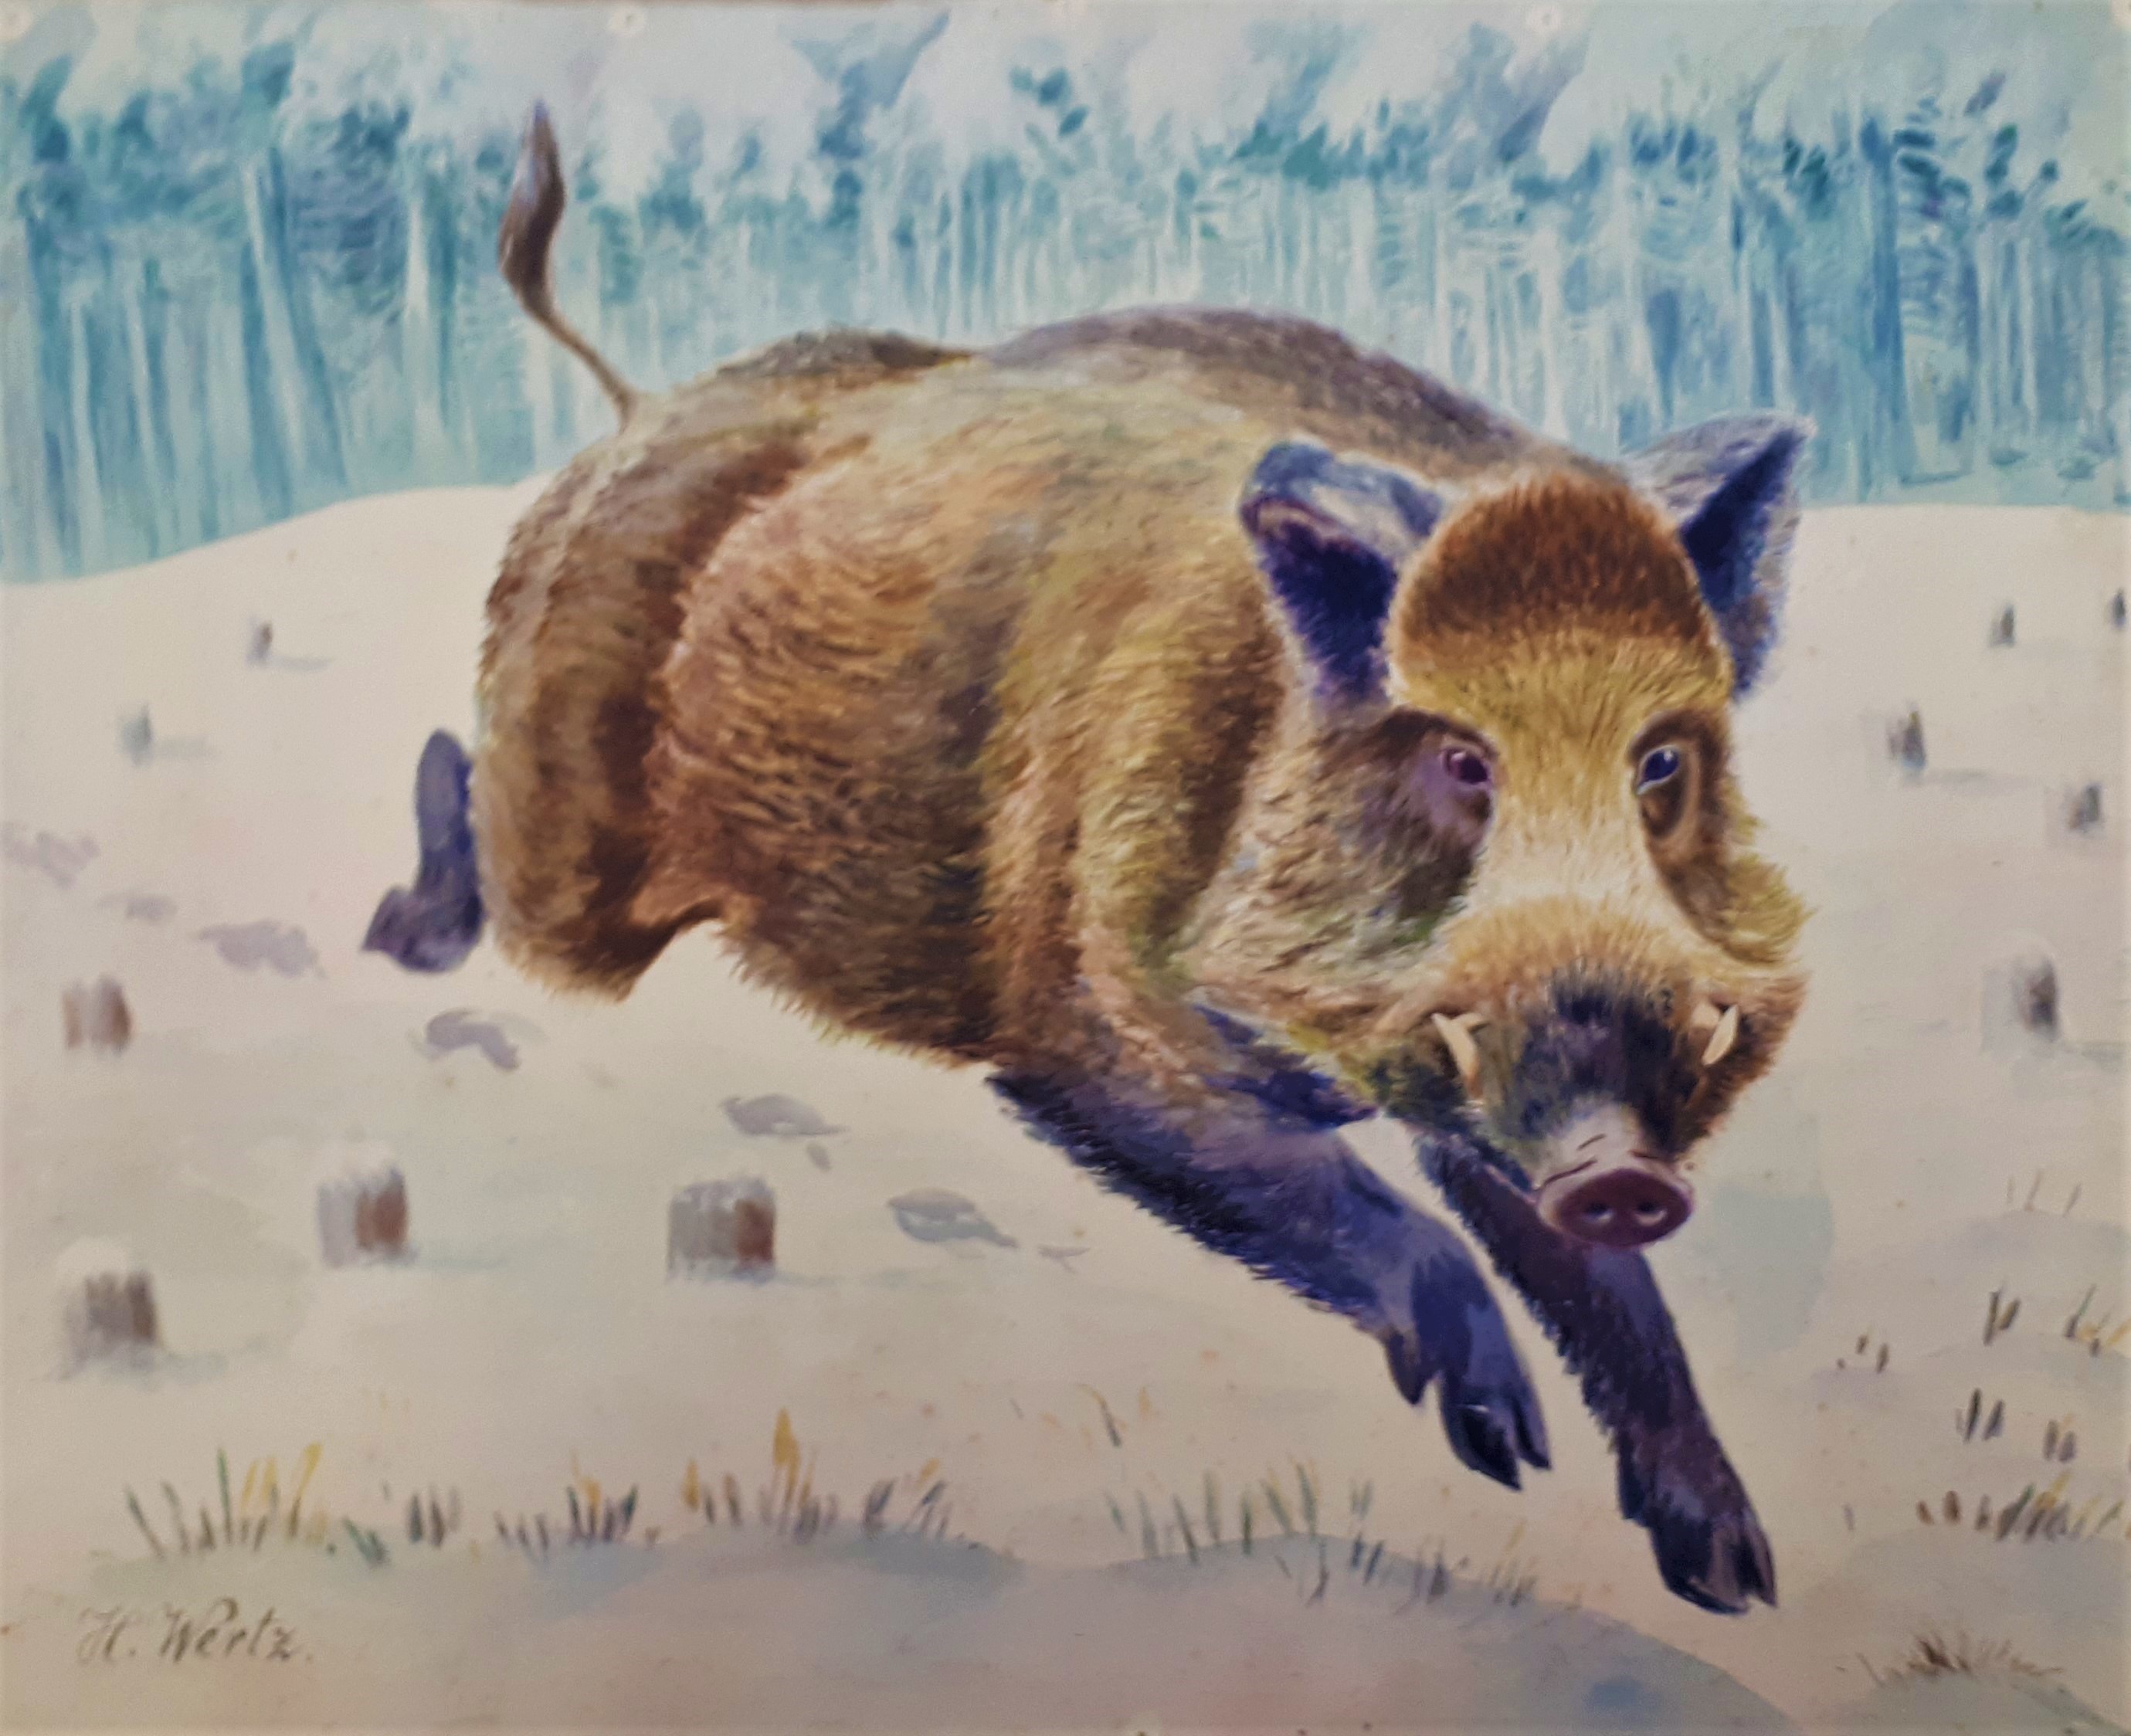 Drei Bilder von Wildschweinen (Hermann Wertz) (Erlebniswelt Museen e. V. CC BY-NC-SA)